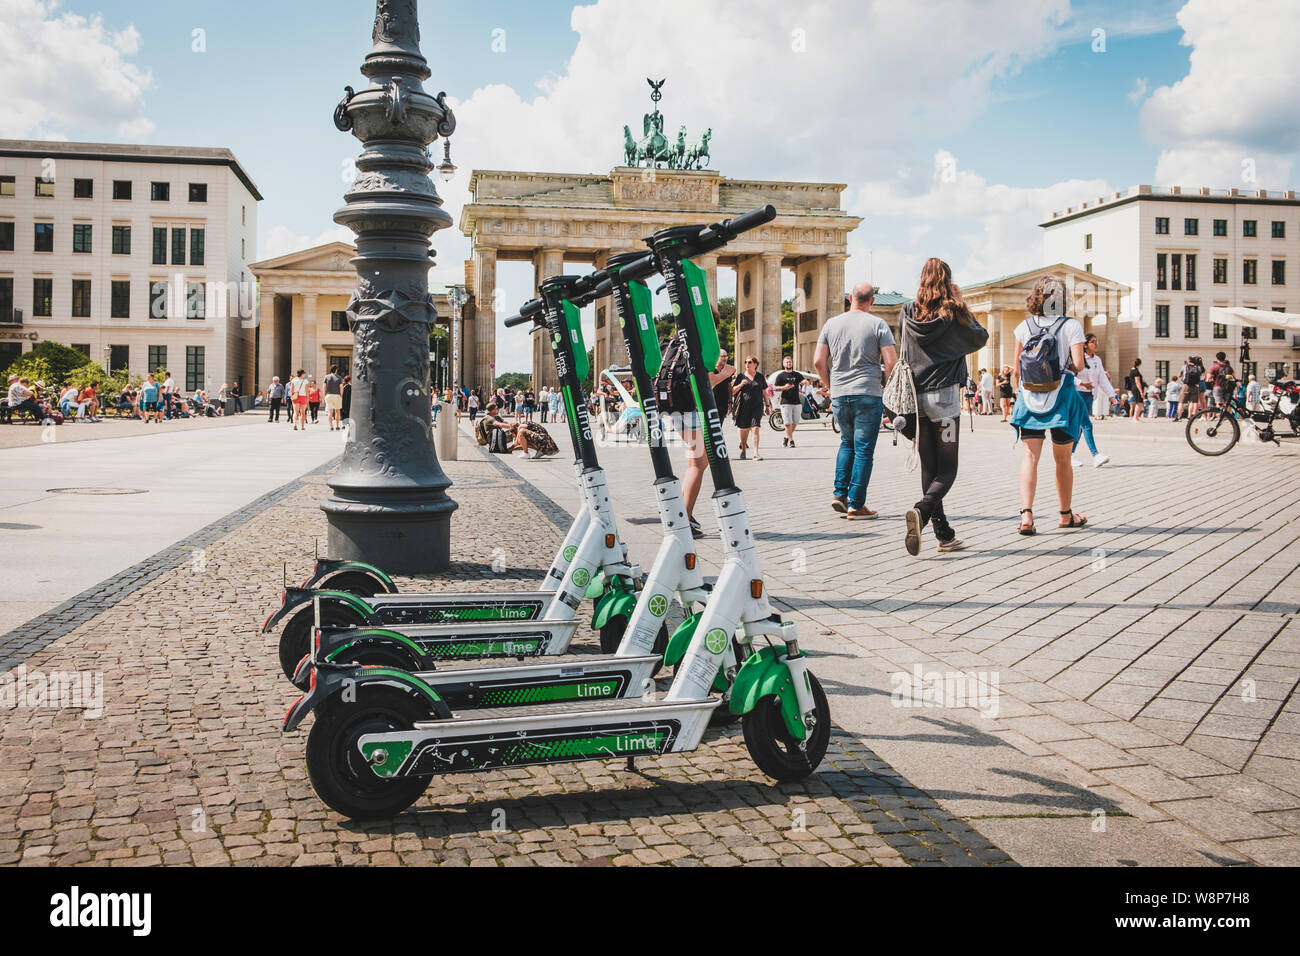 Berlin, Alemania - Junio 2019: Eléctrico E scooter , escooter o e-scooter de la empresa lime estacionado en la Puerta de Brandenburgo en Berlín. Foto de stock